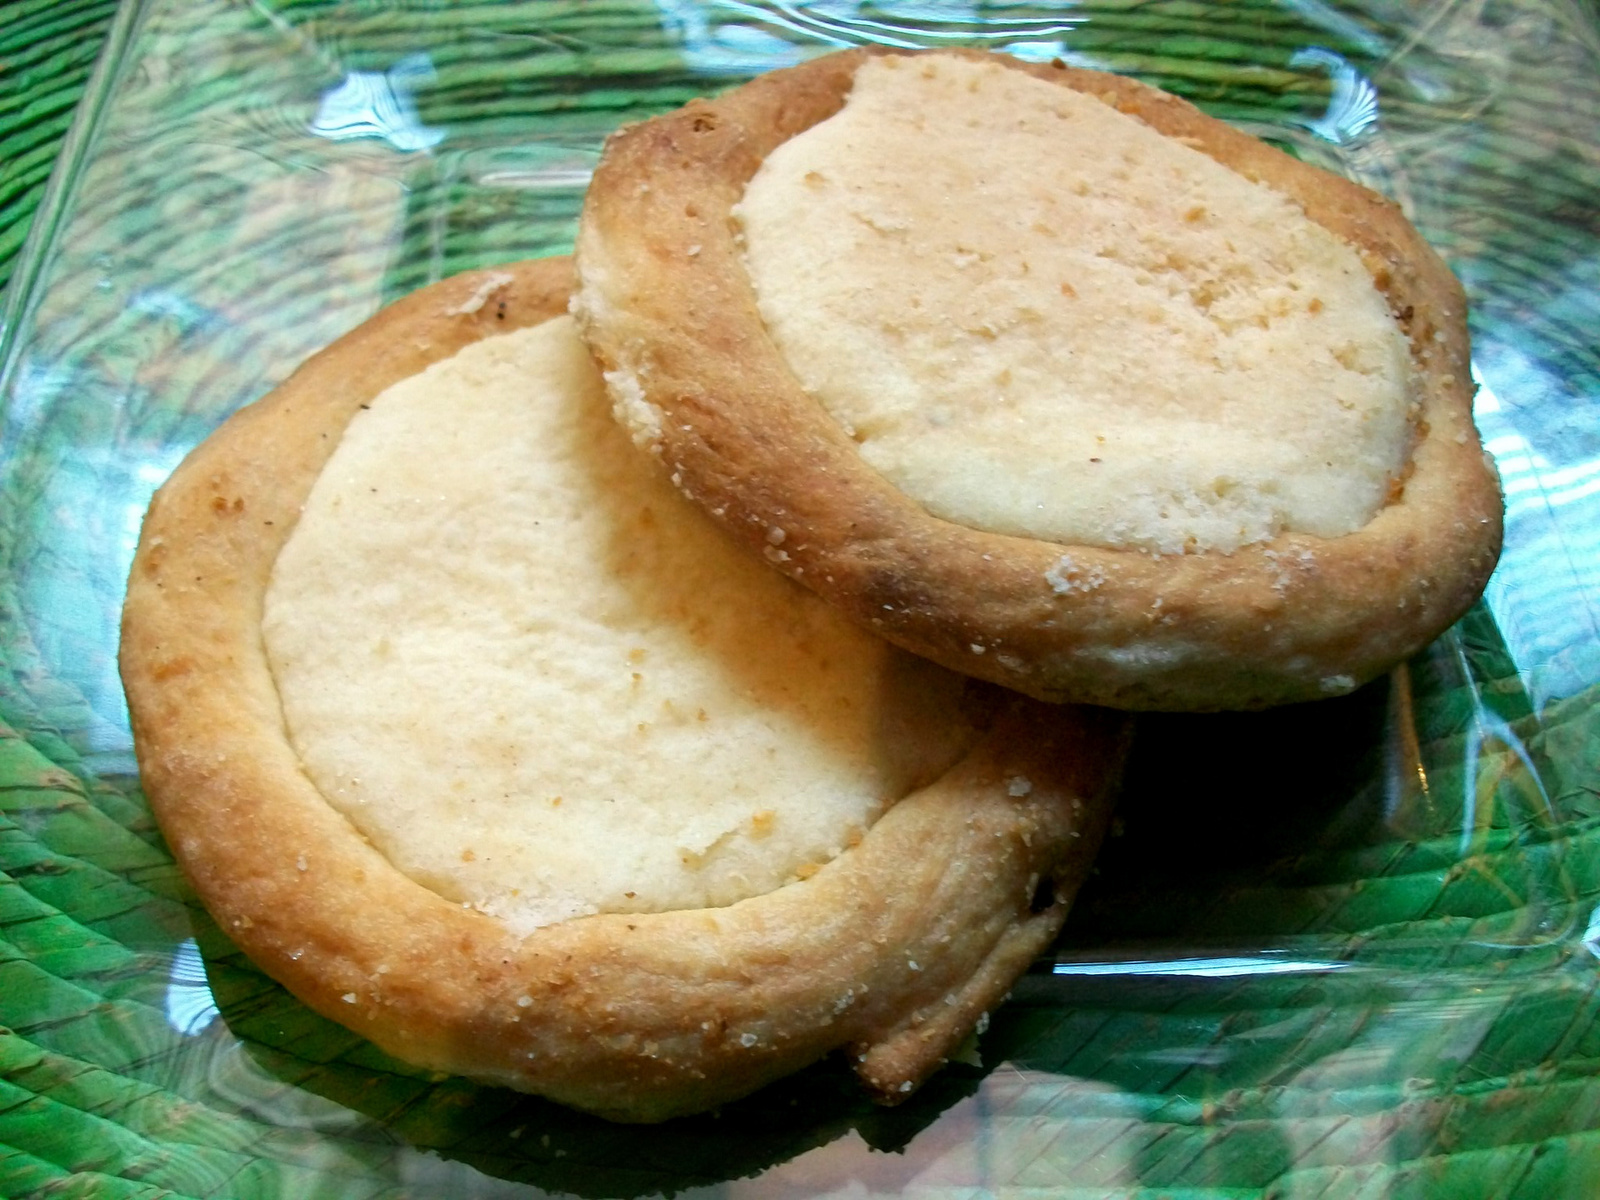 INTERNATIONAL: Bread of the Week 18 - Mexican Sweet Bread aka PAN DULCE.